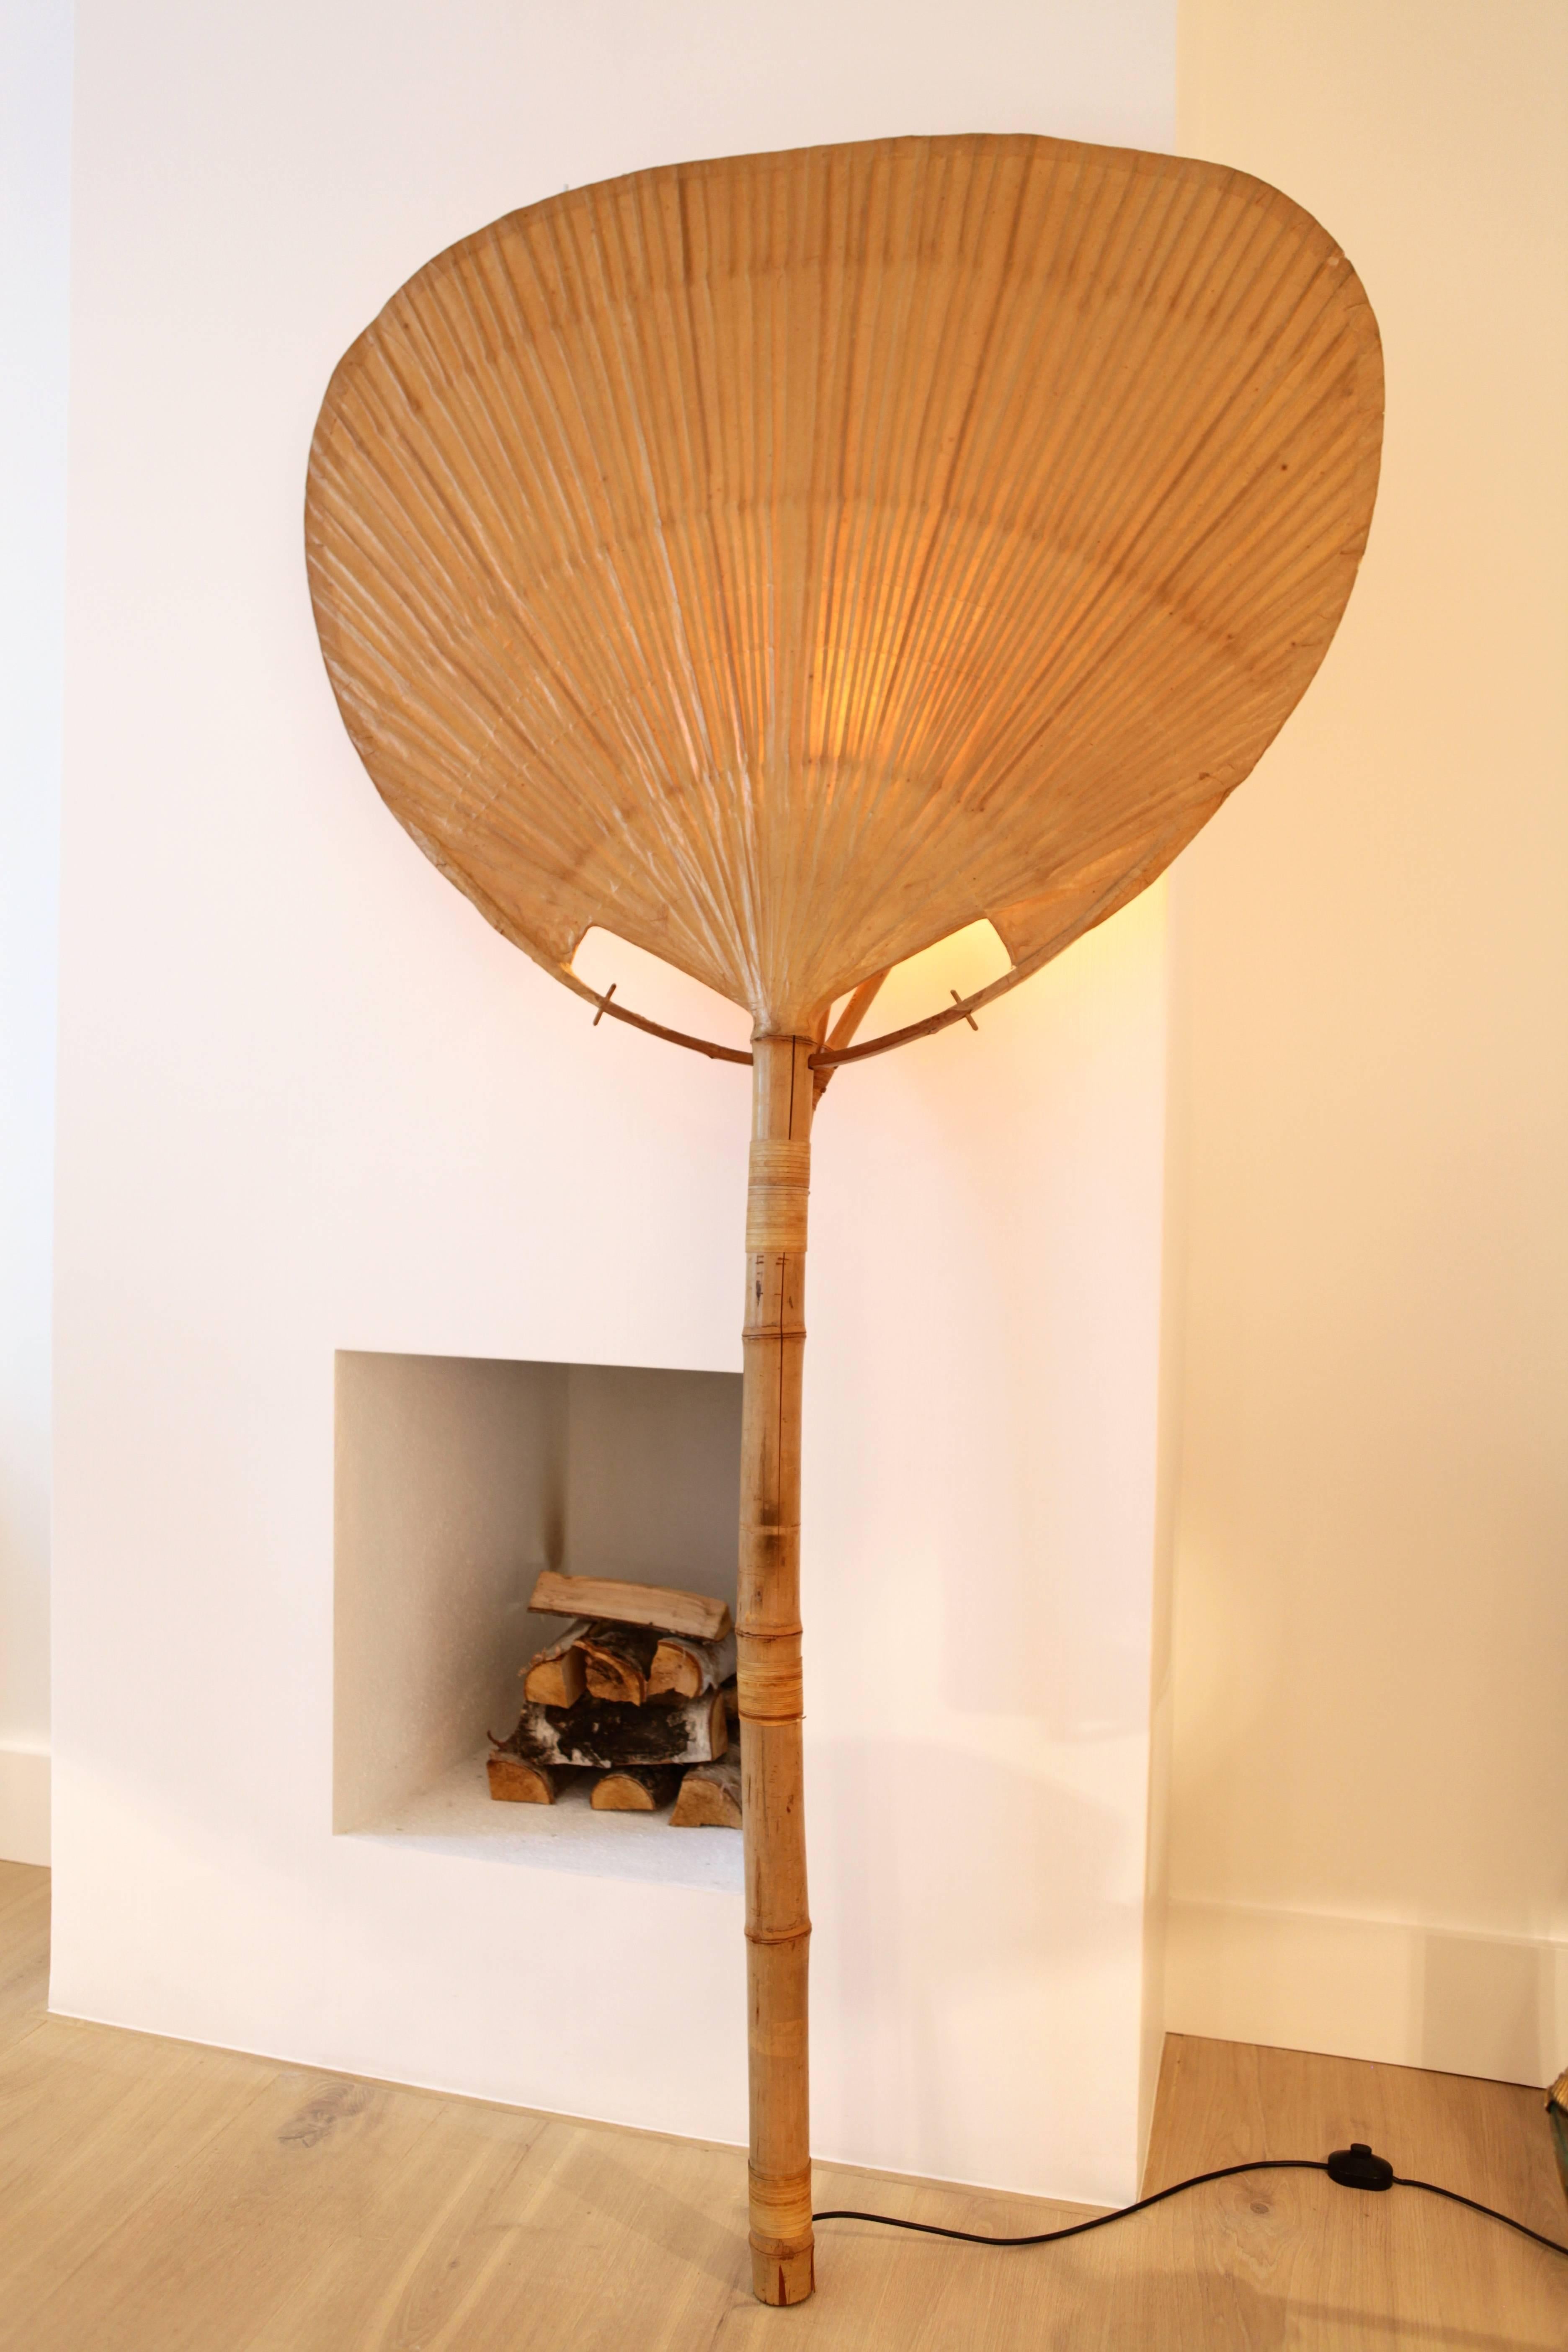 Ingo Maurer, Uchiwa I, floor lamp,
1973, designed by Ingo Maurer, signed M Design, Munich
Bamboo, rice paper
original large size.
Lit: Ingo Mauer: Making Light. pg. 64 / 249.